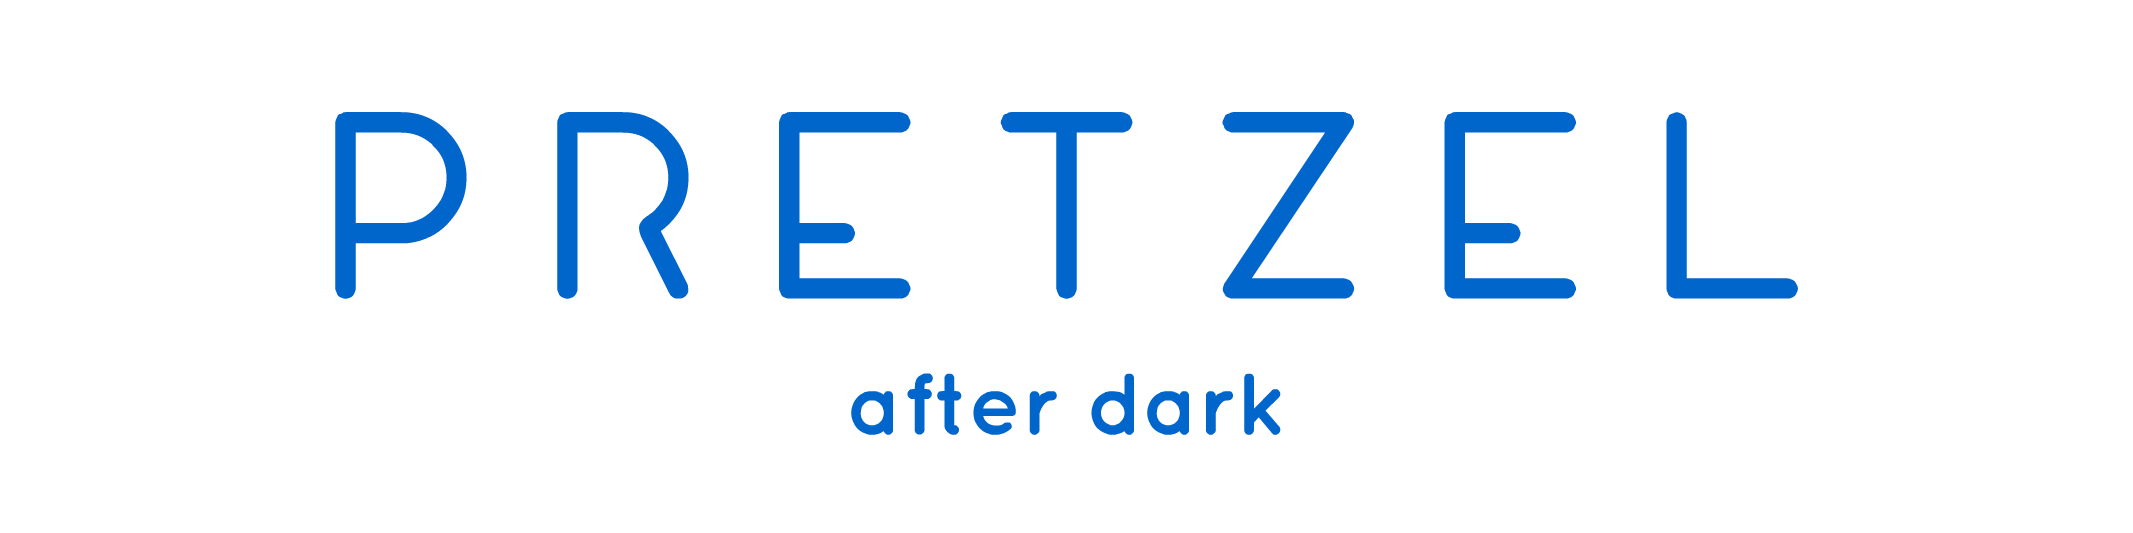 Pretzel After Dark